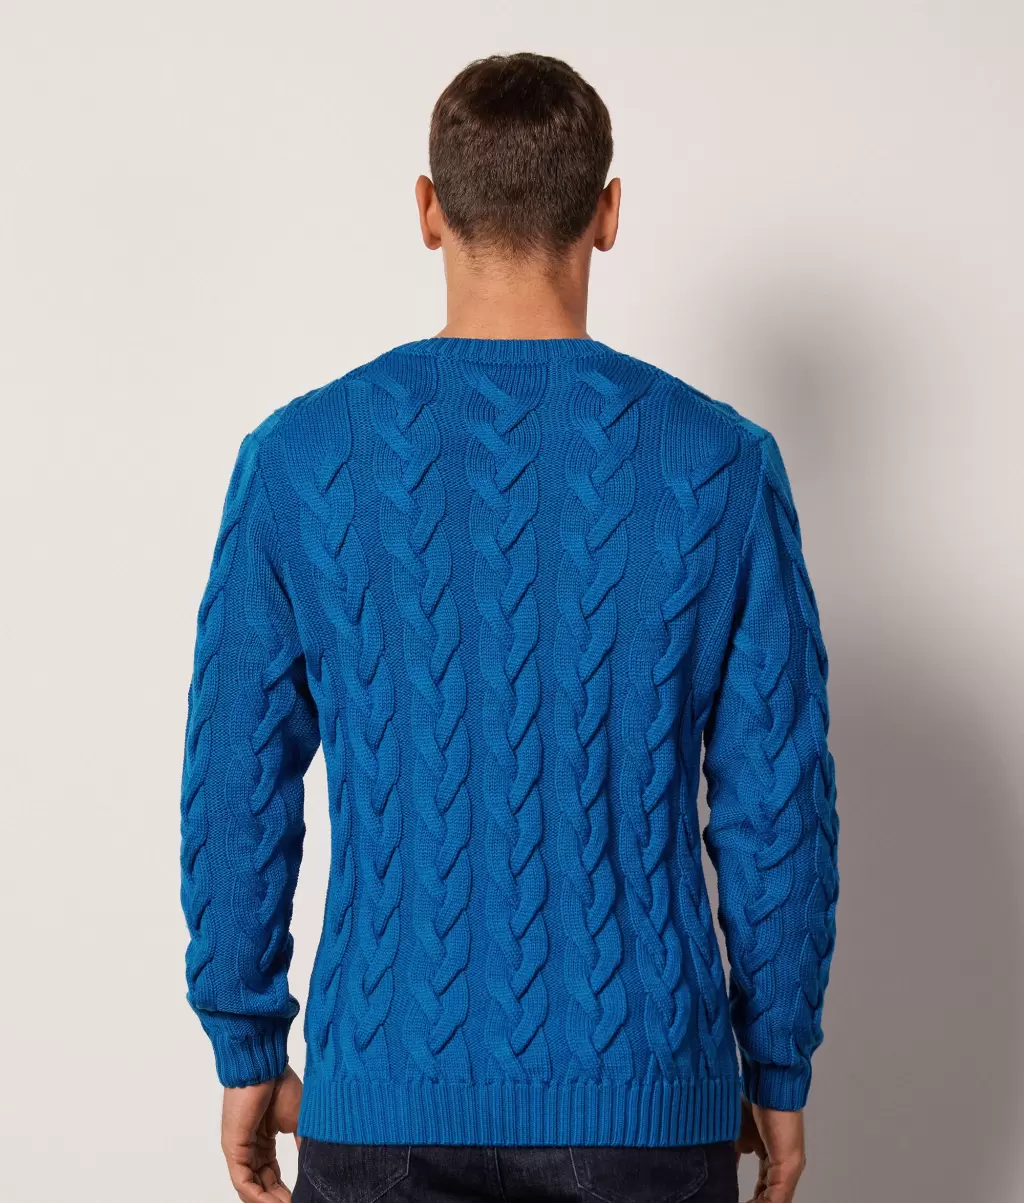 Pulower Z Wełny Merynosa Z Warkoczowym Splotem Falconeri Blue Swetry Z Okrągłym Dekoltem Mężczyzna - 2